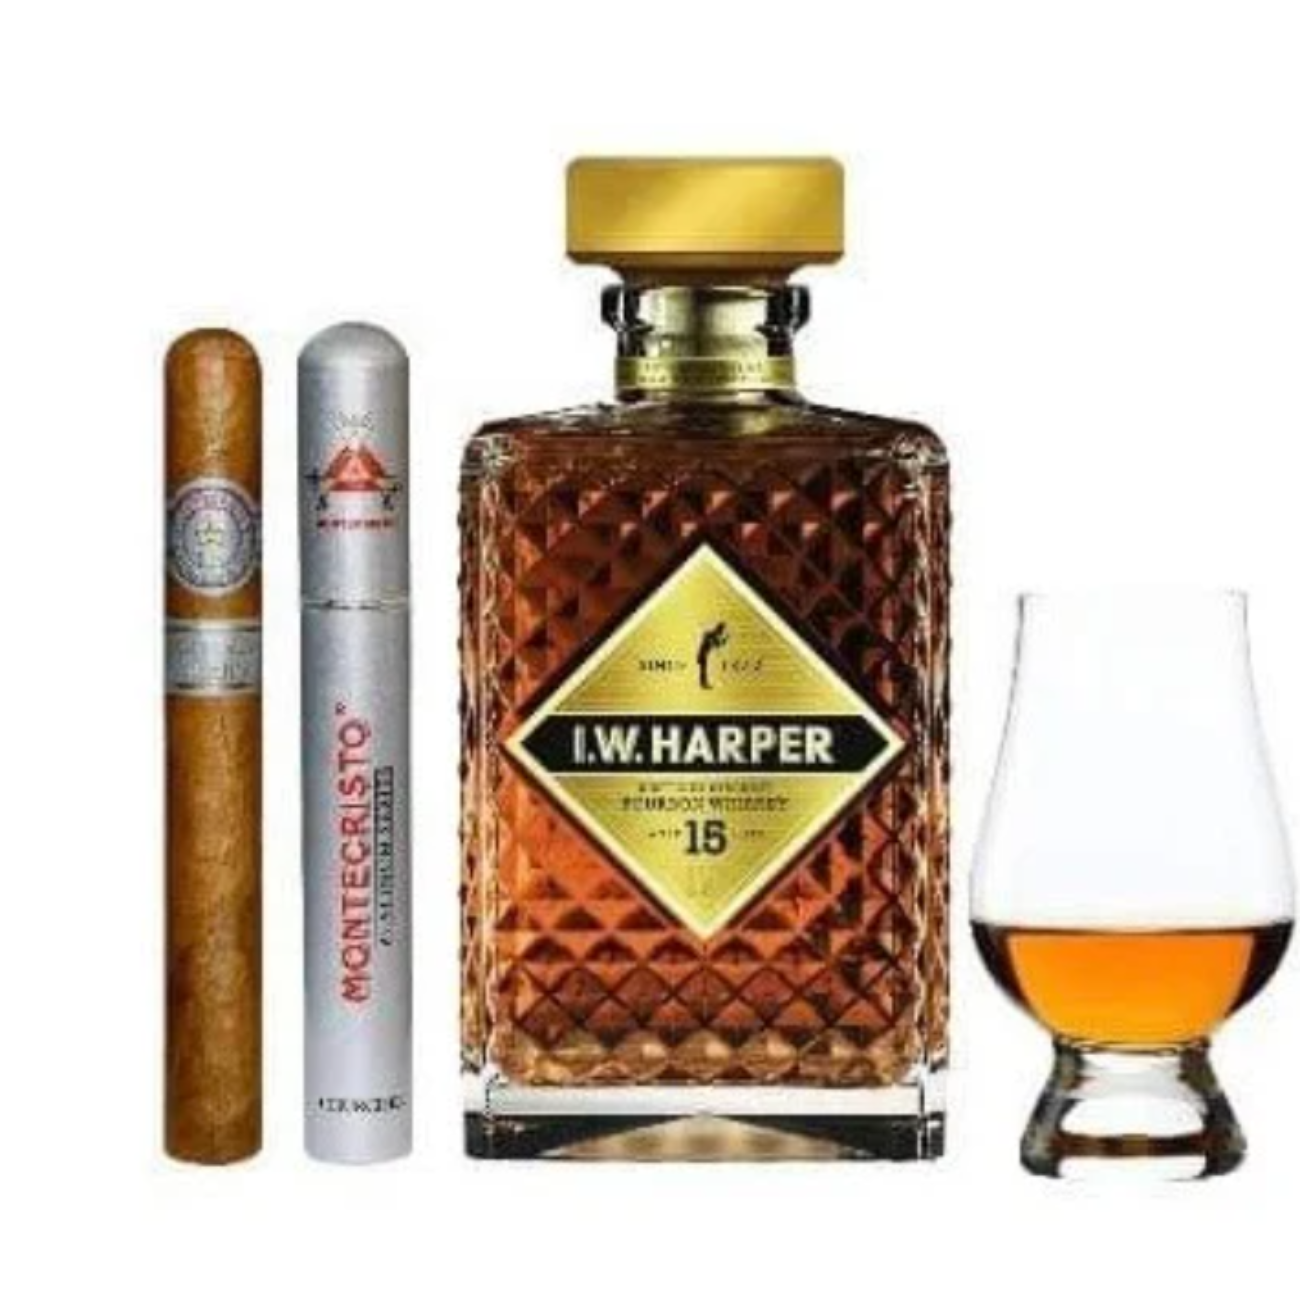 I.W. Harper 15yr | Cigar & Glencairn Gift set | Bourbon Whiskey